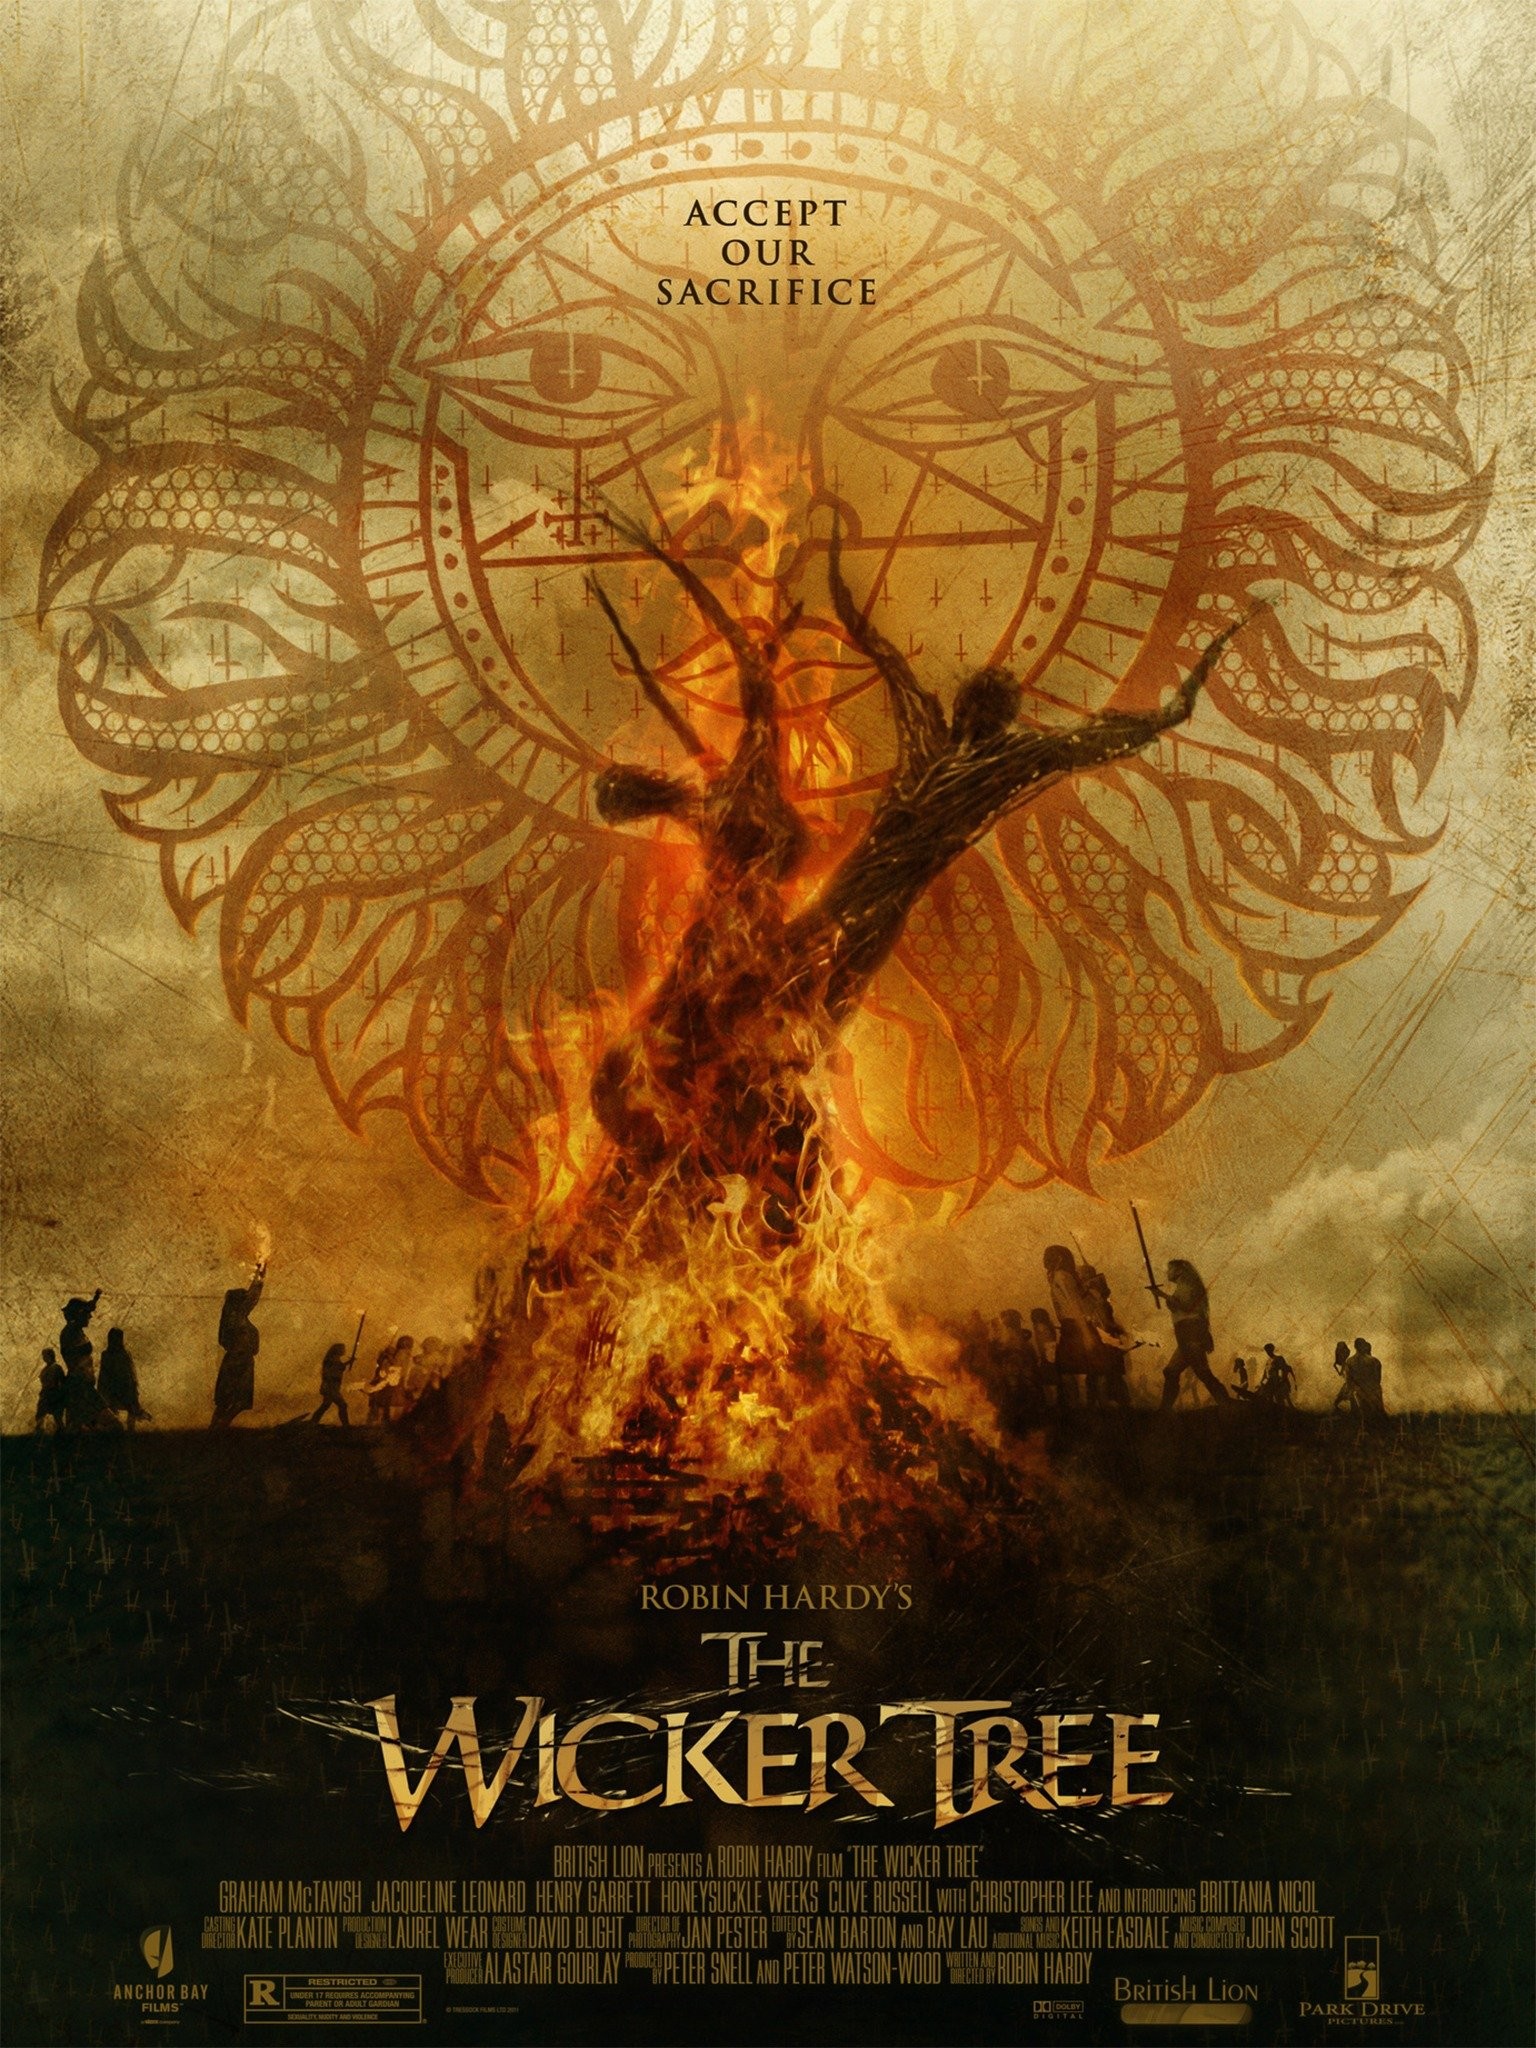 The wicker tree